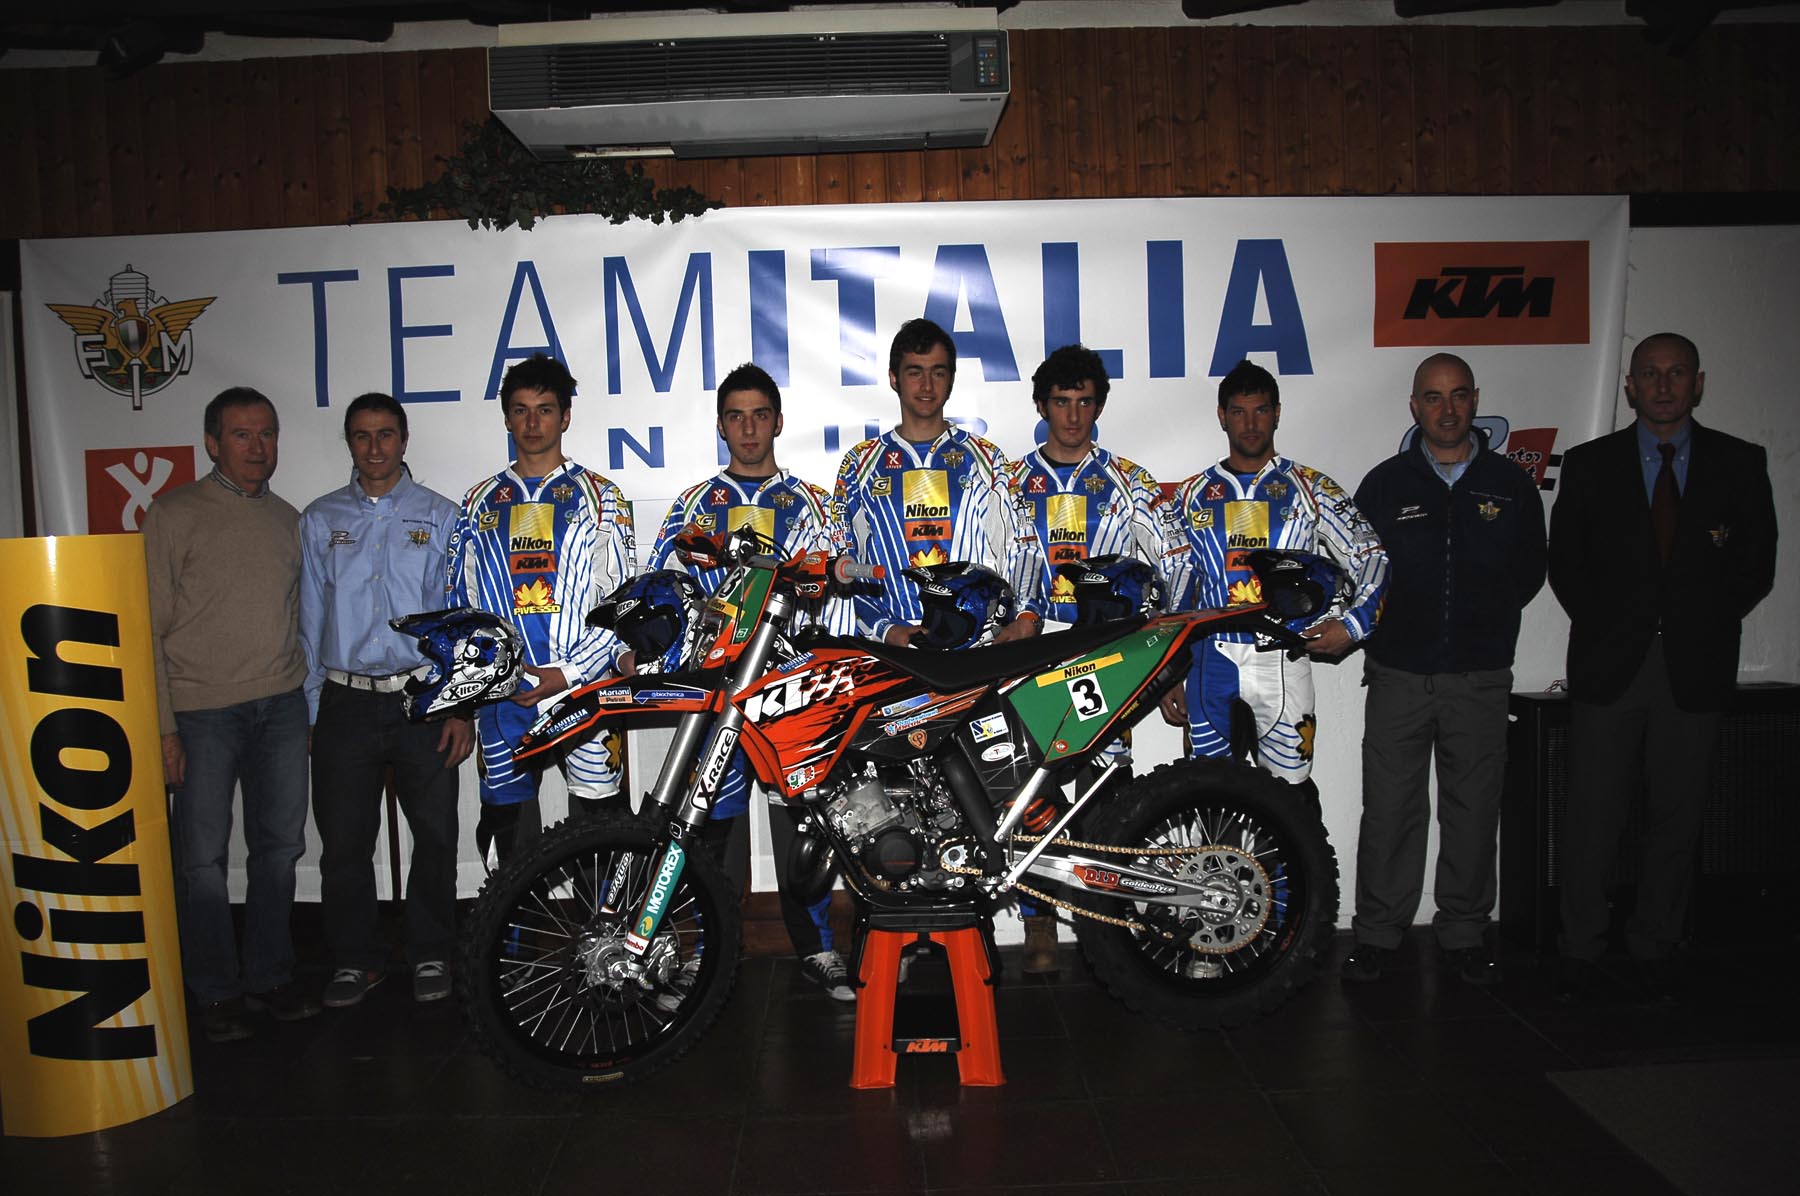 Team Italia 2010 Enduro: i cinque piloti 